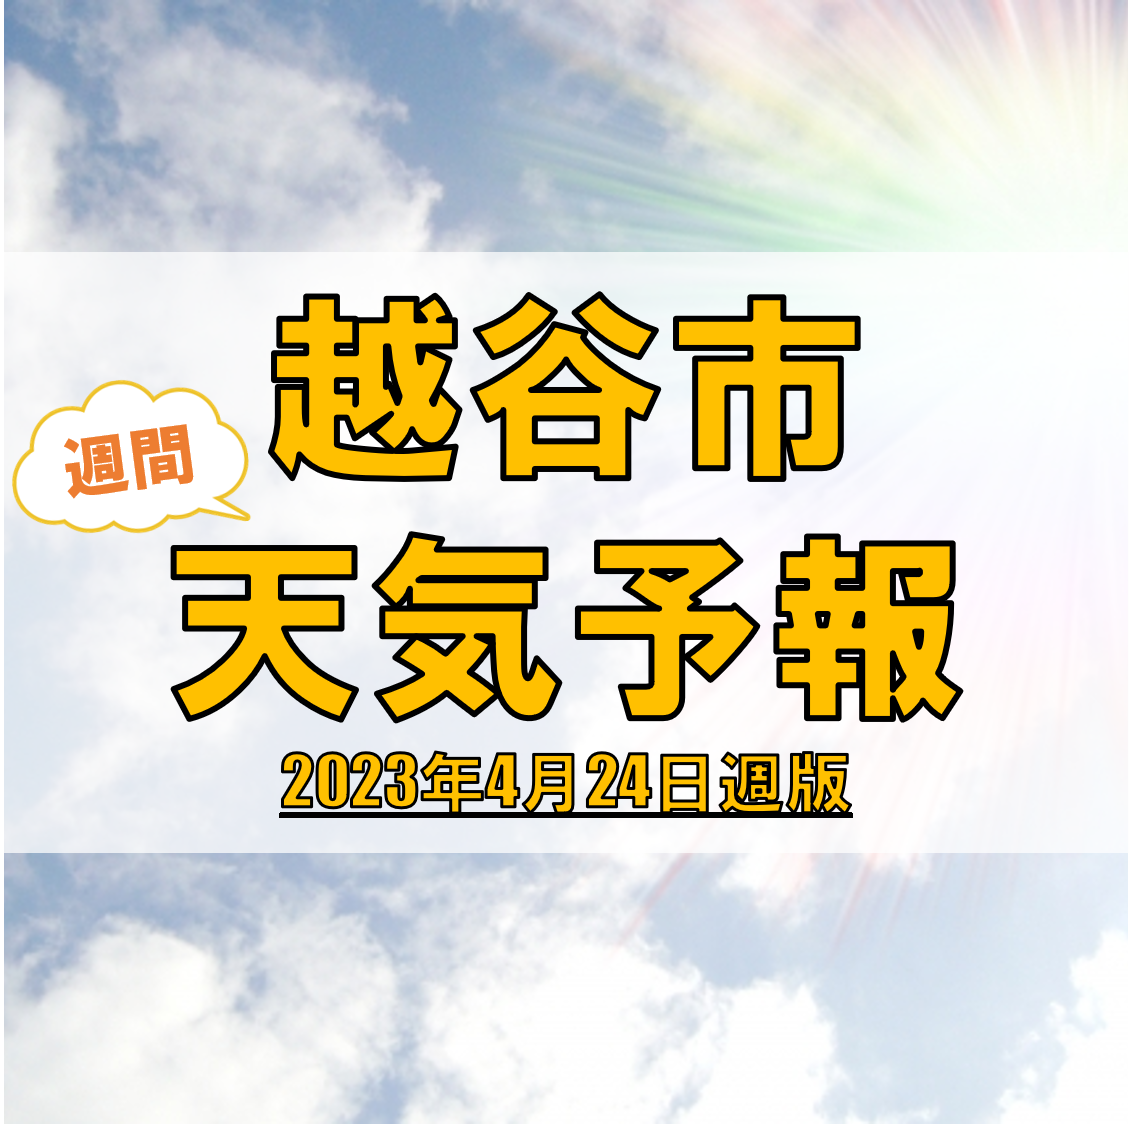 越谷市の天気 週間予報【2023年4月24日週】